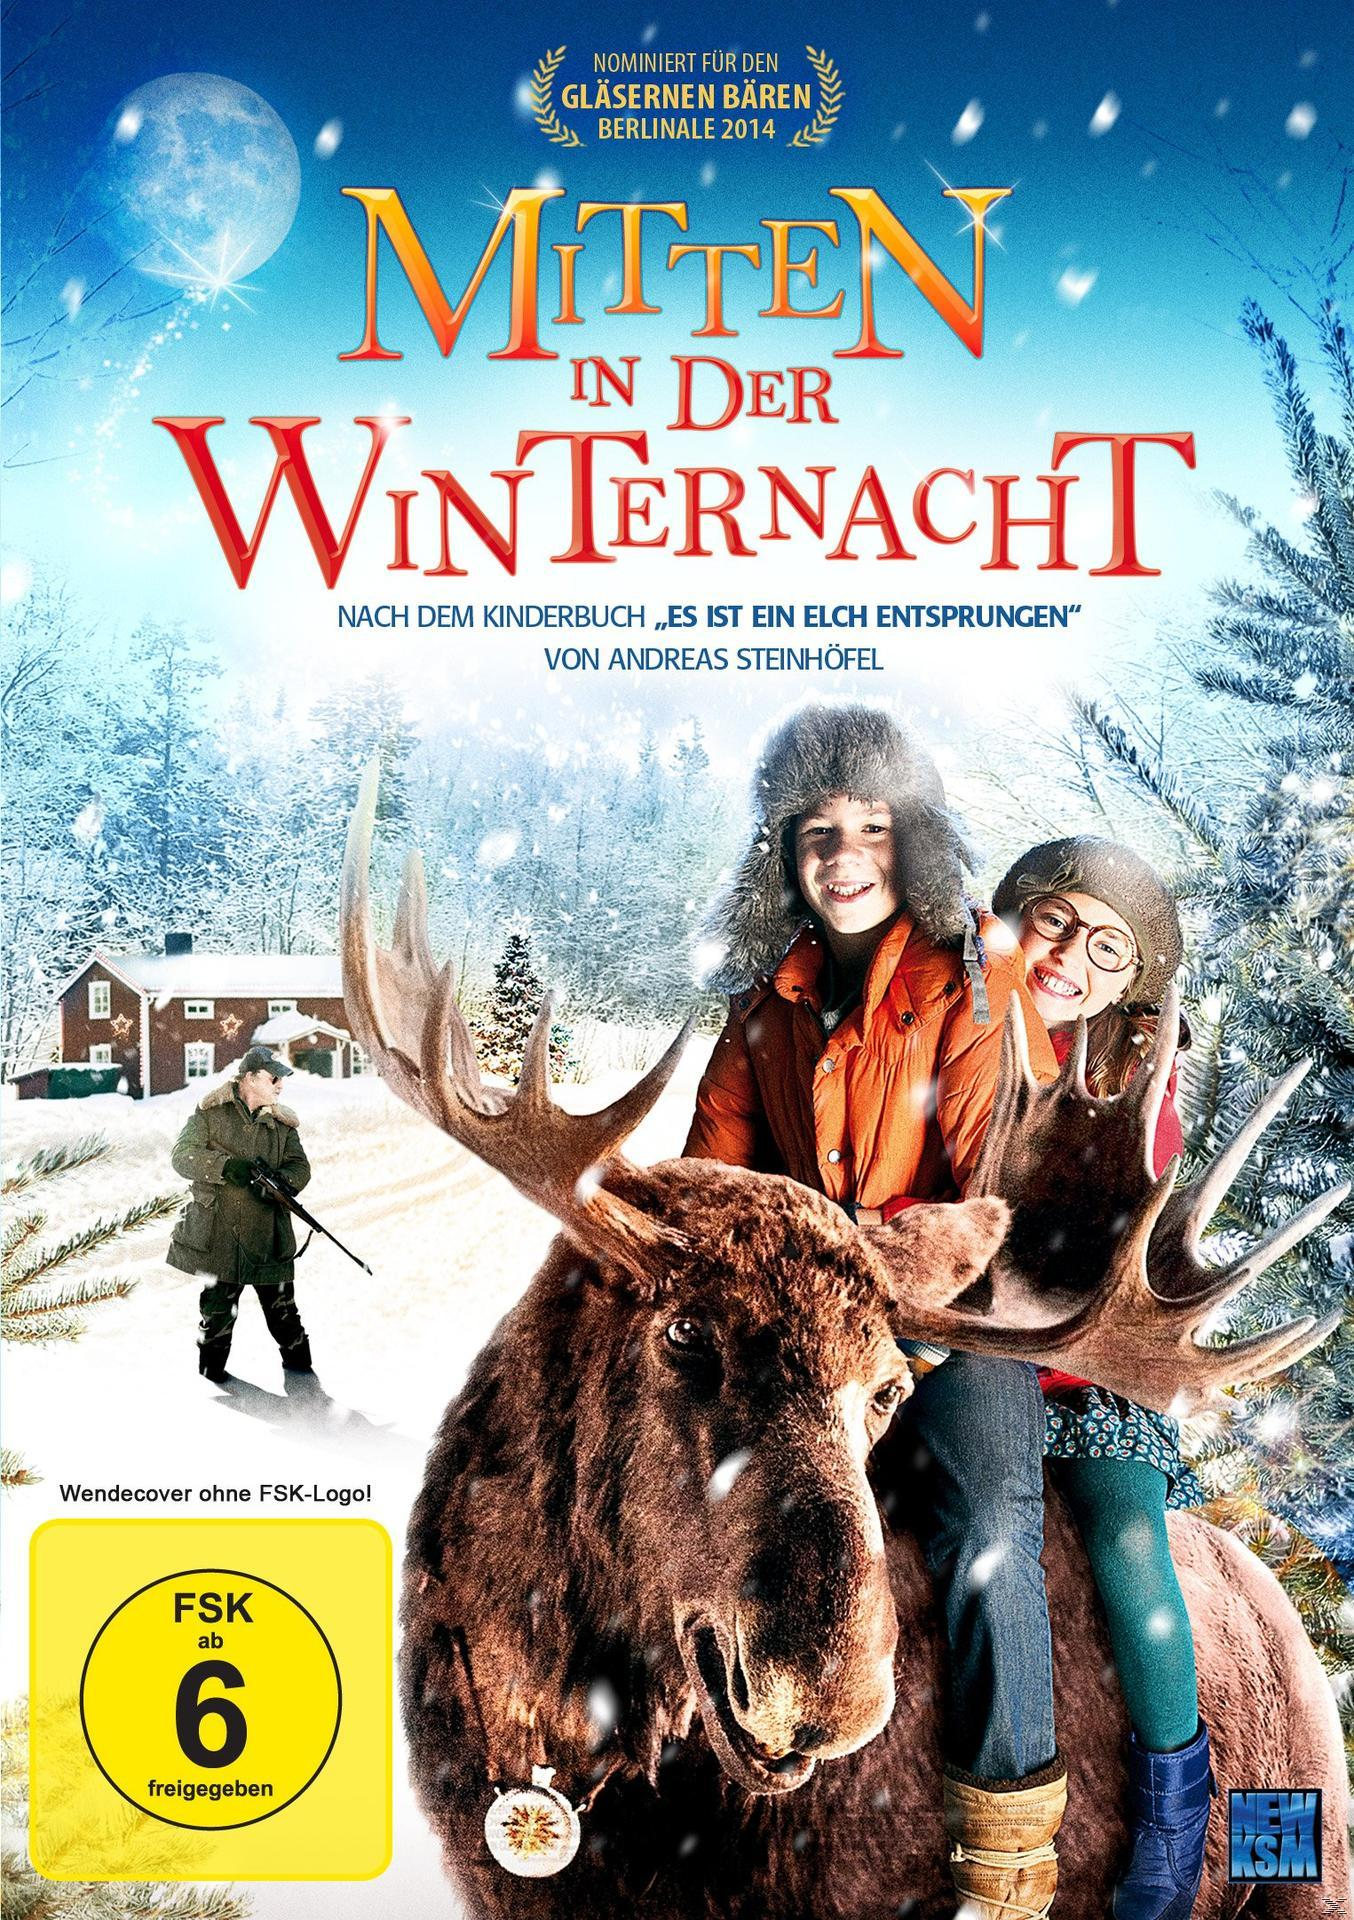 Winternacht der in DVD Mitten